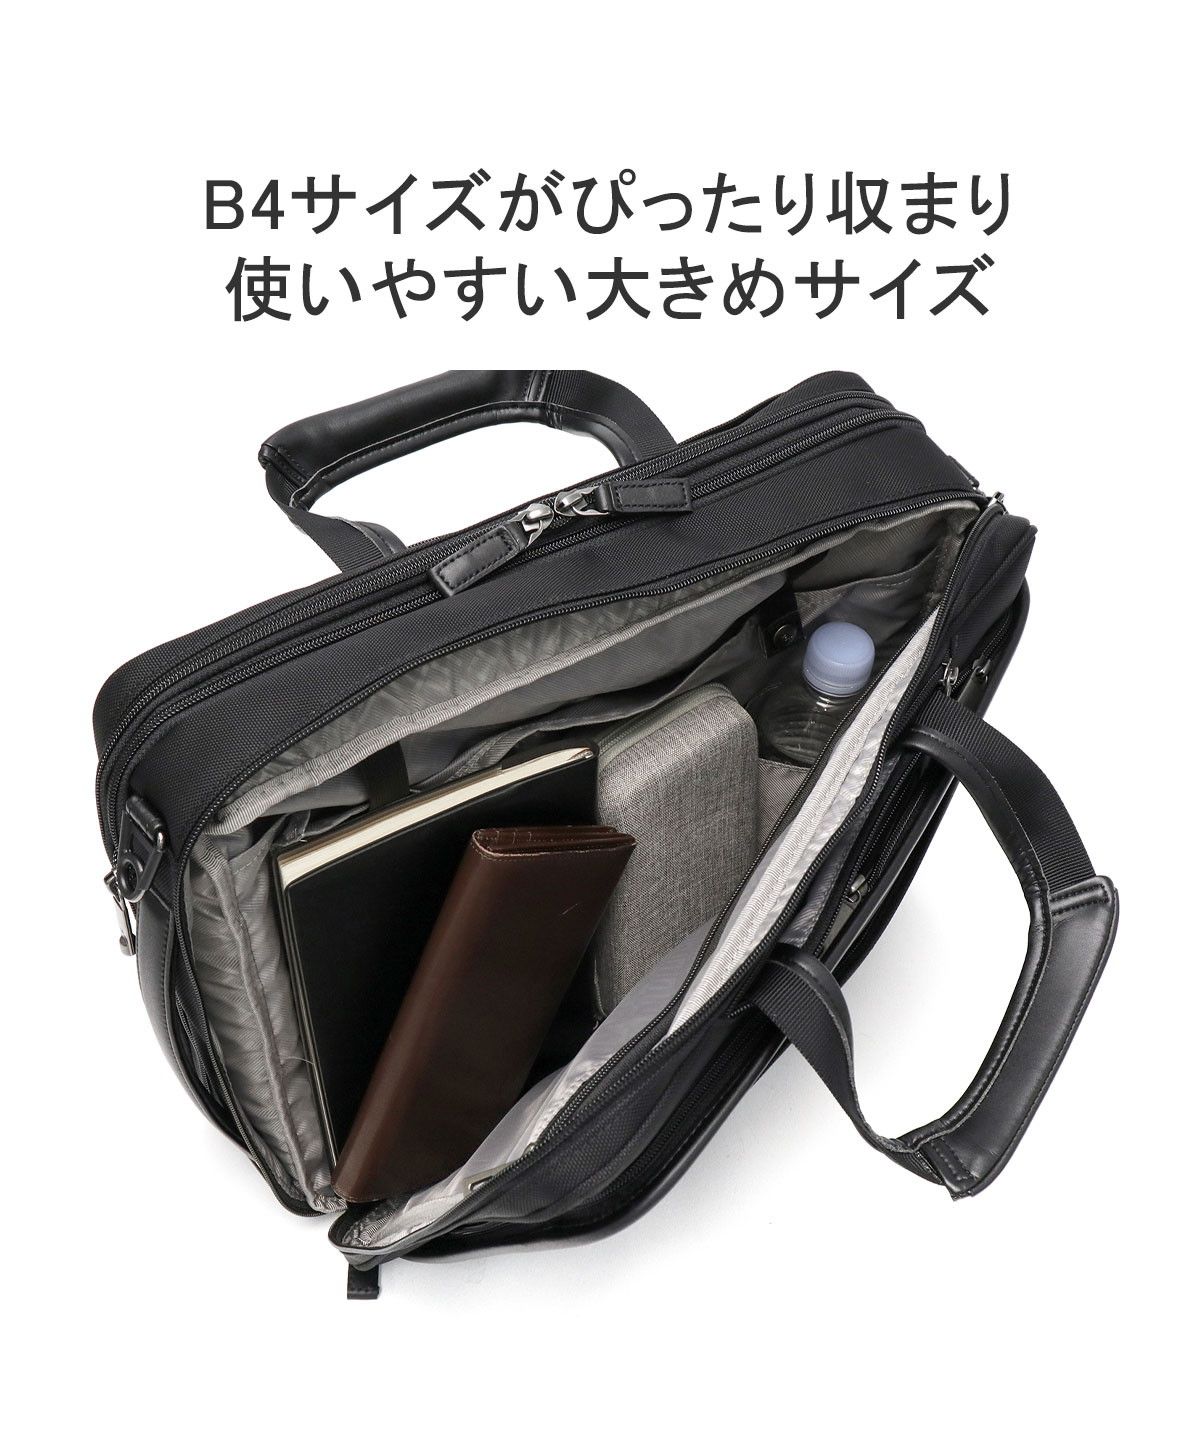 セール】【日本正規品】エースジーン ブリーフケース ビジネスバッグ